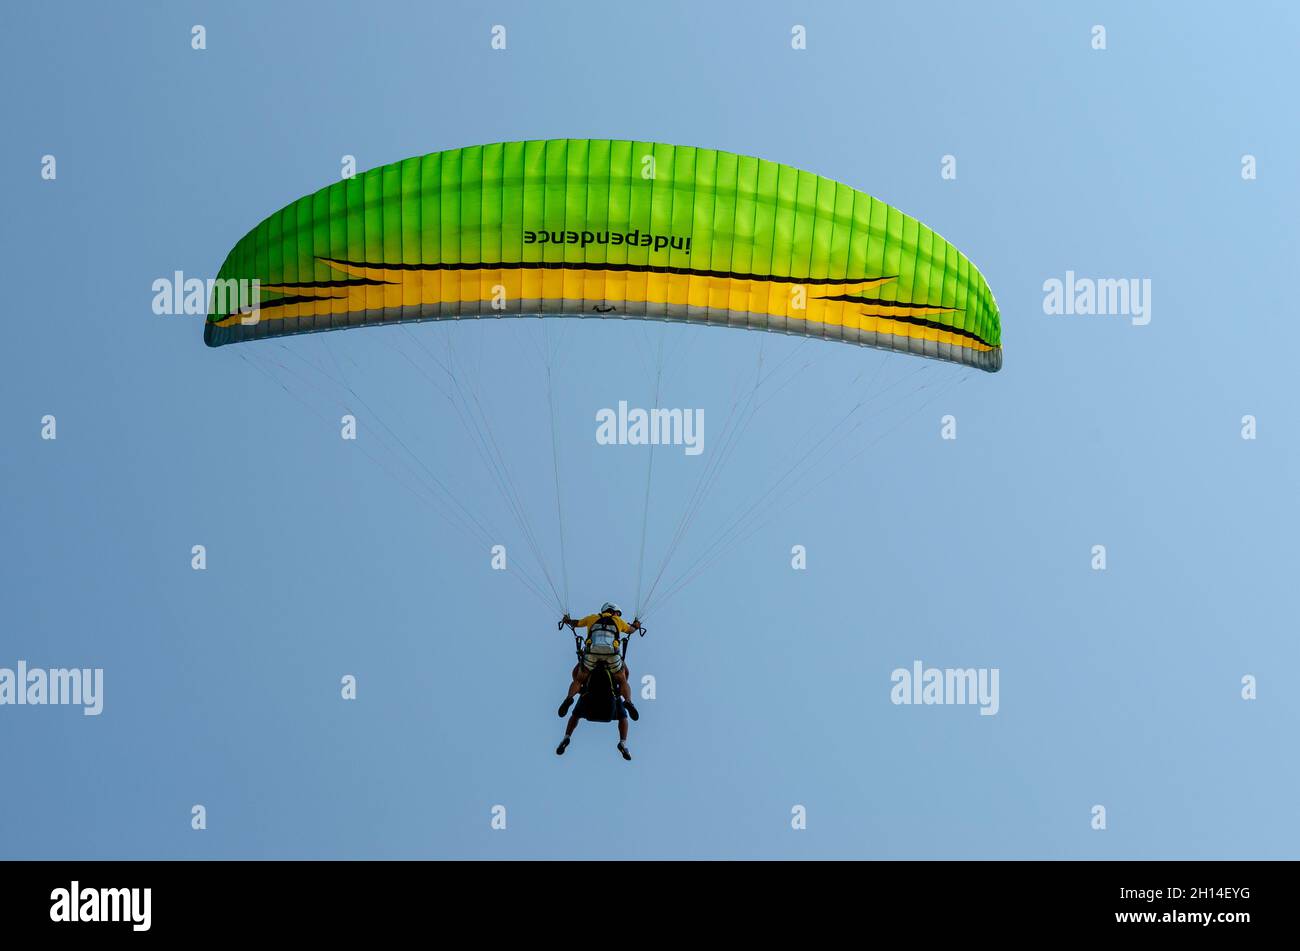 Parachute de couleur jaune et vert tandem contre ciel bleu clair. Banque D'Images